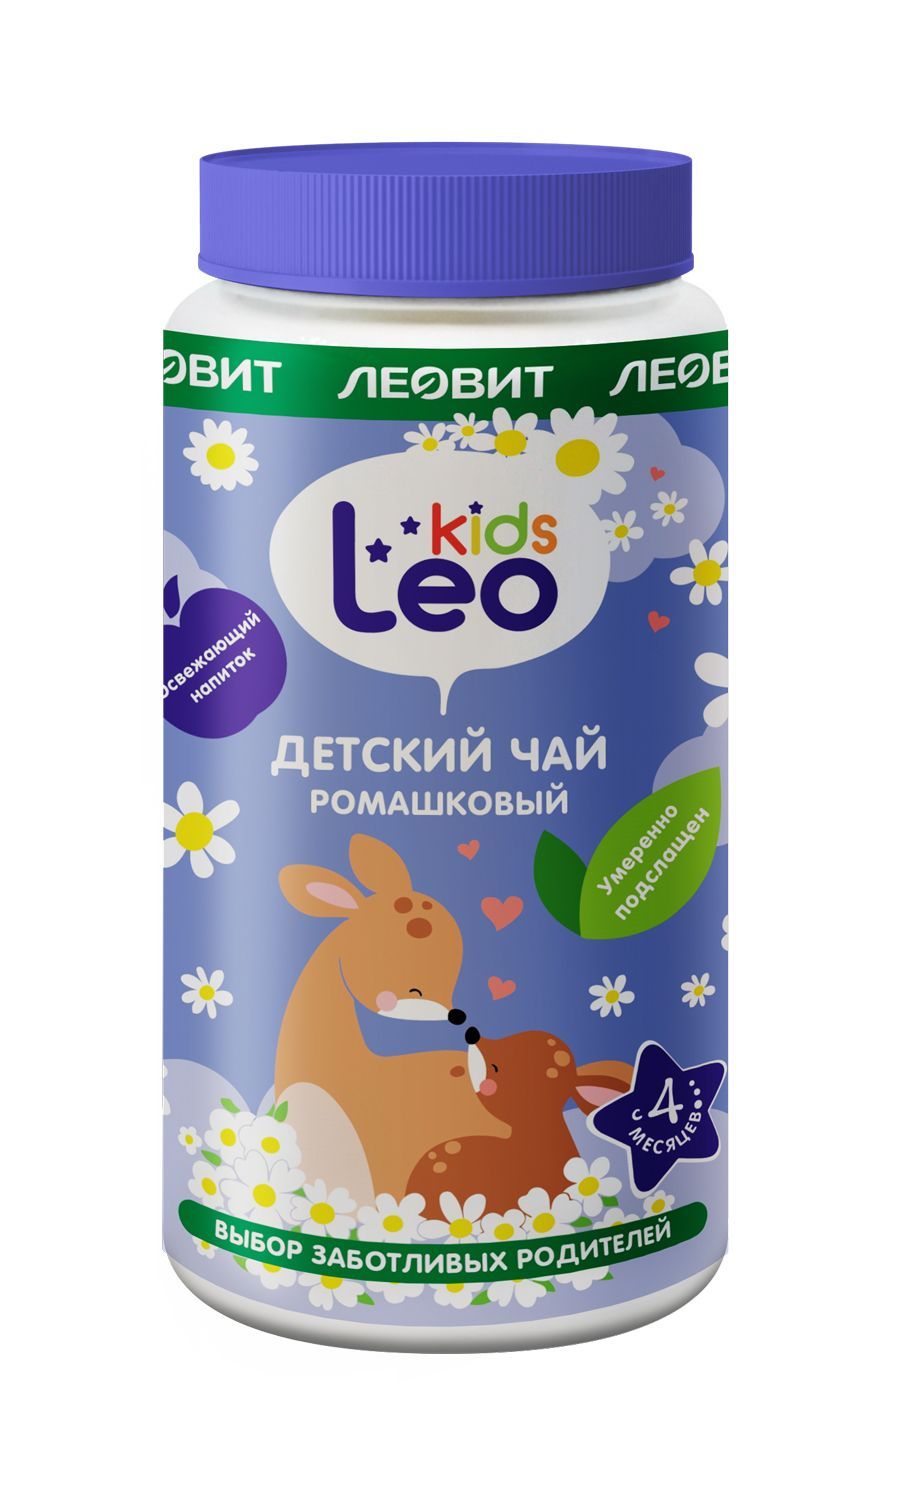 фото упаковки Леовит Leo Kids Детский чай ромашковый